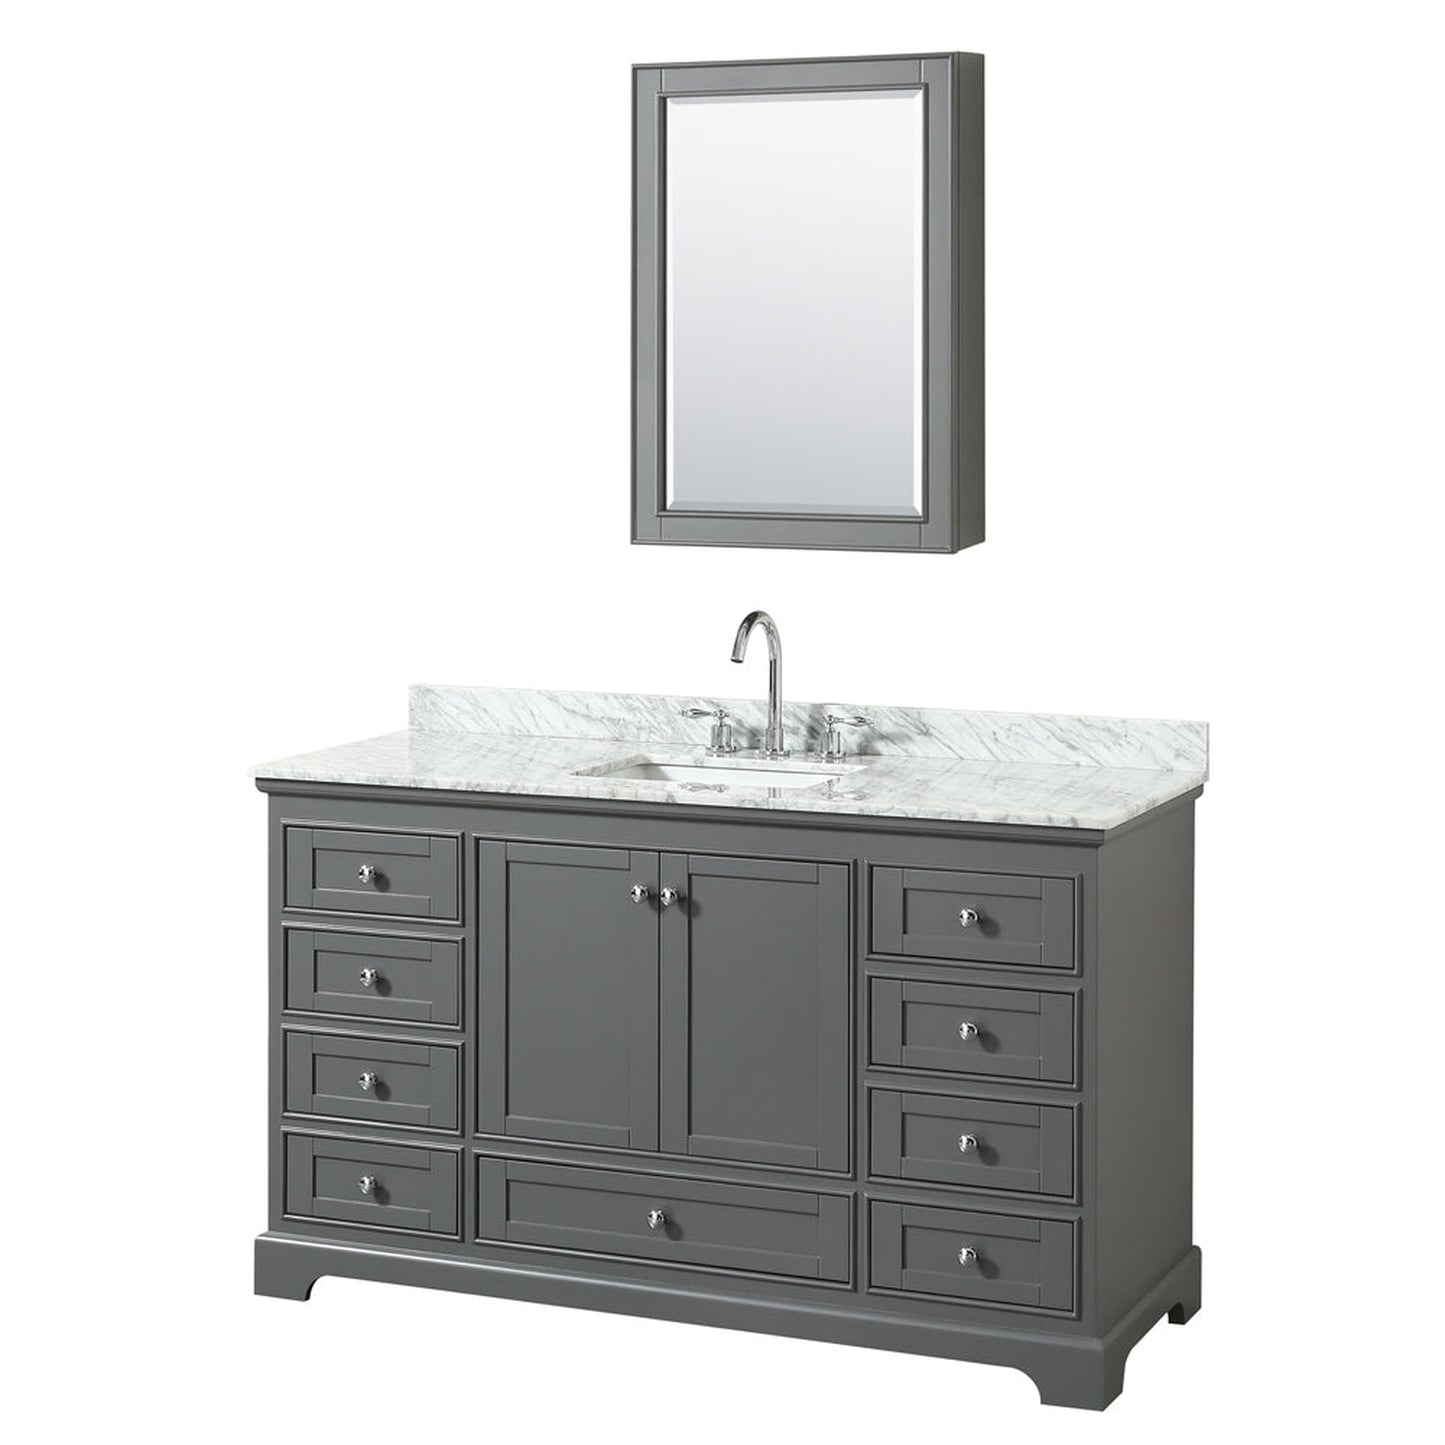 Wyndham Collection Deborah 60" Single Bathroom Vanity in Dark Gray, White Carrara Marble Countertop, Undermount Square Sink, and Medicine Cabinet